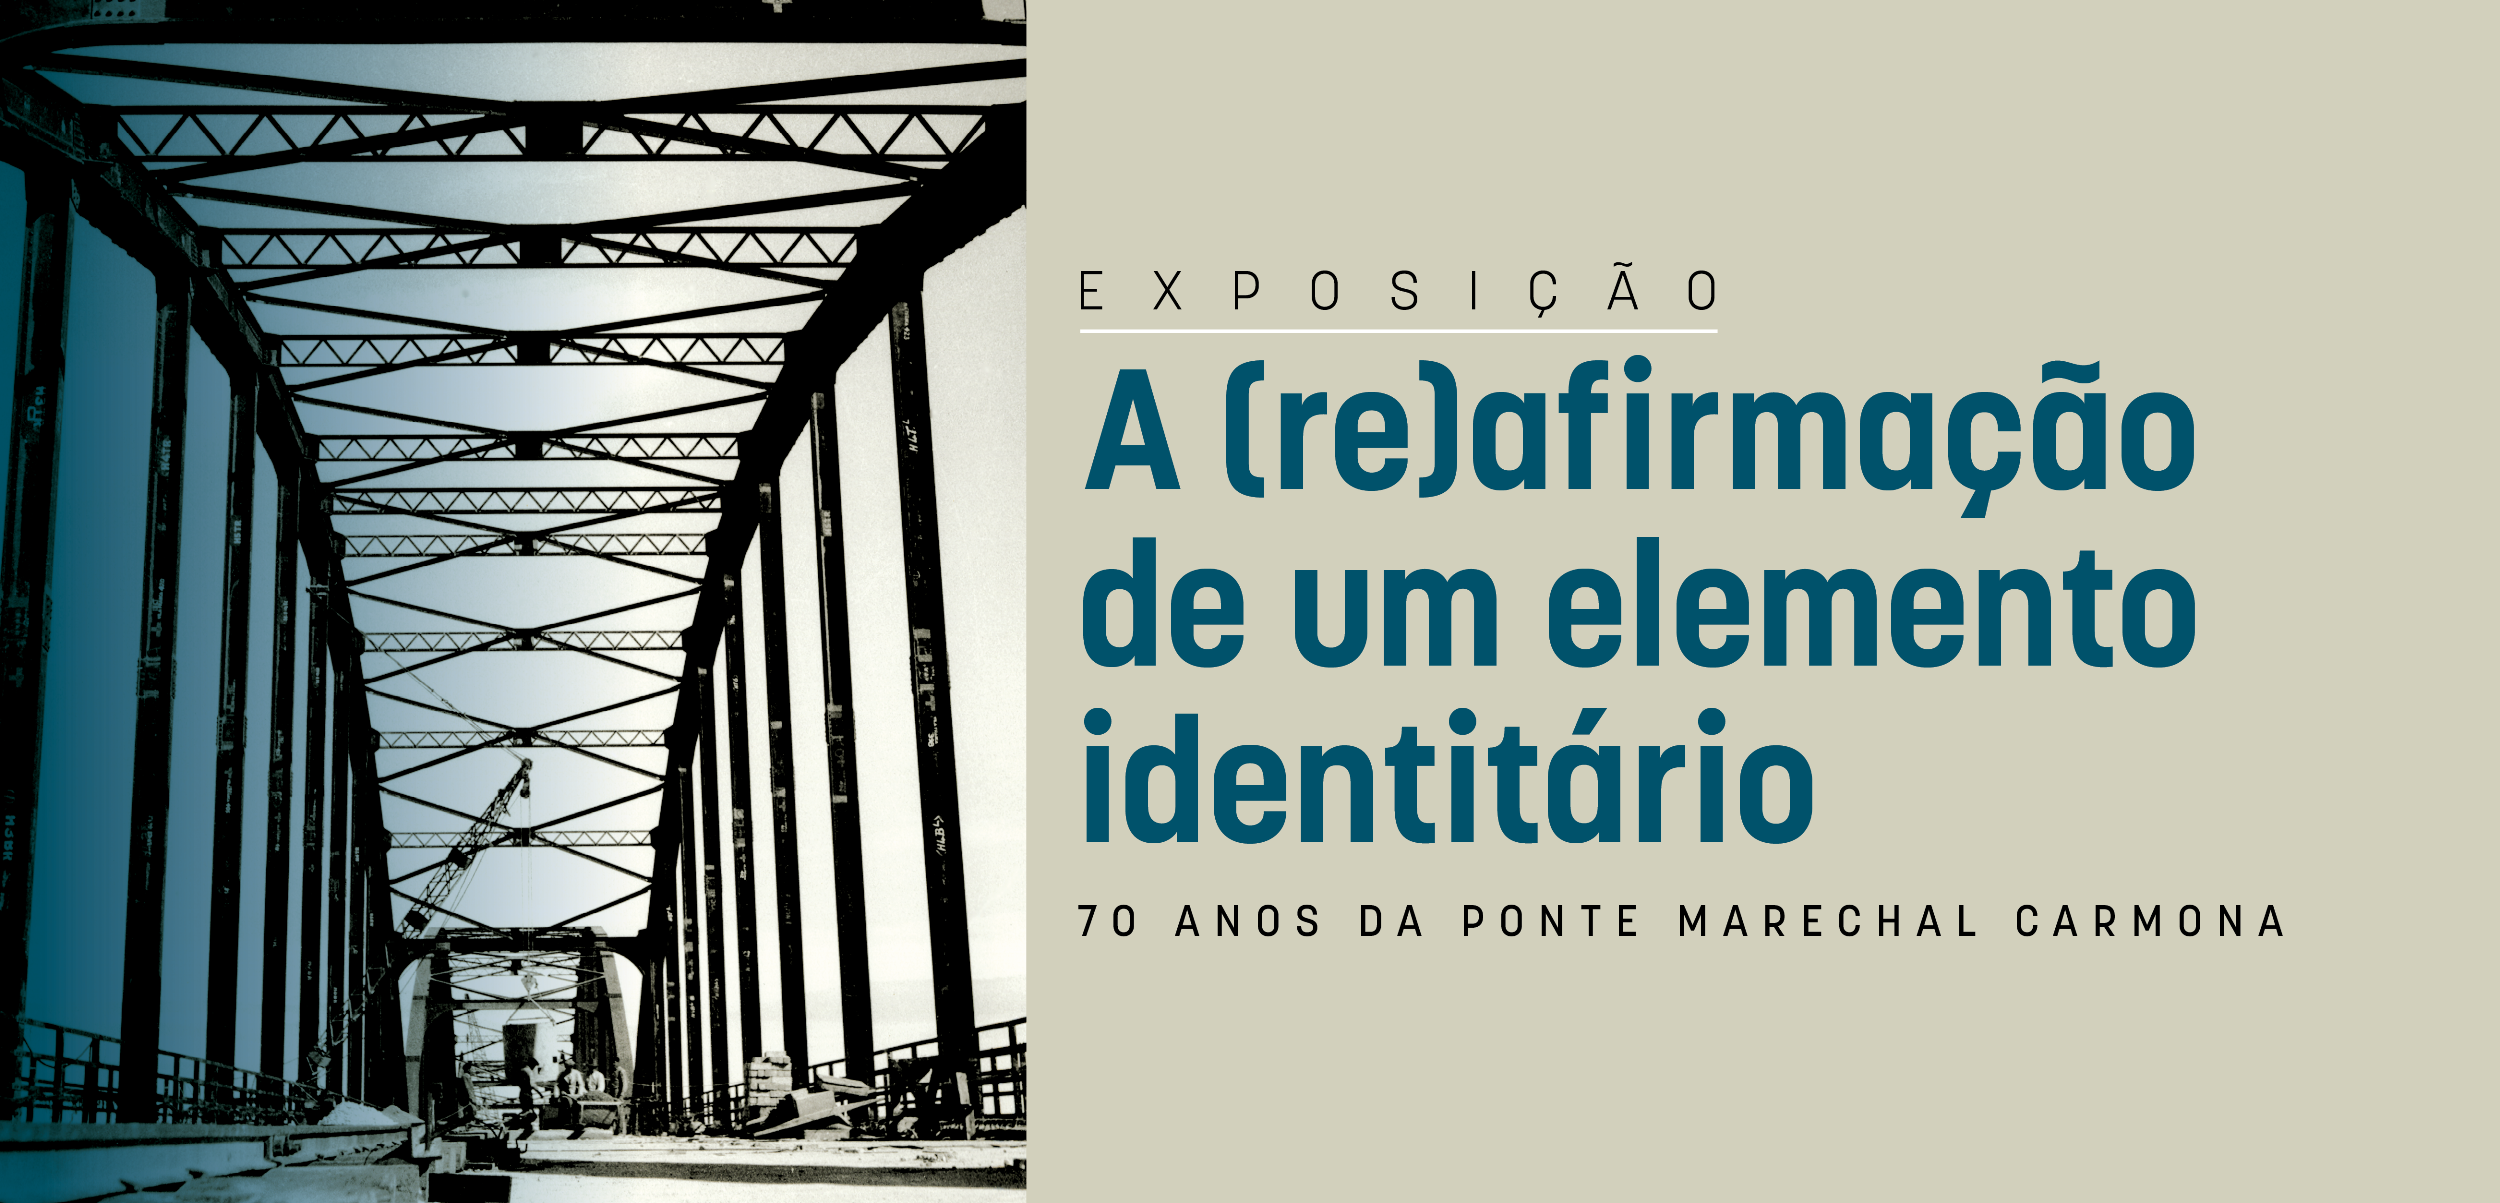 Exposição "A (re)afirmação de um elemento identitário - 70 anos da Ponte Marechal Carmona"